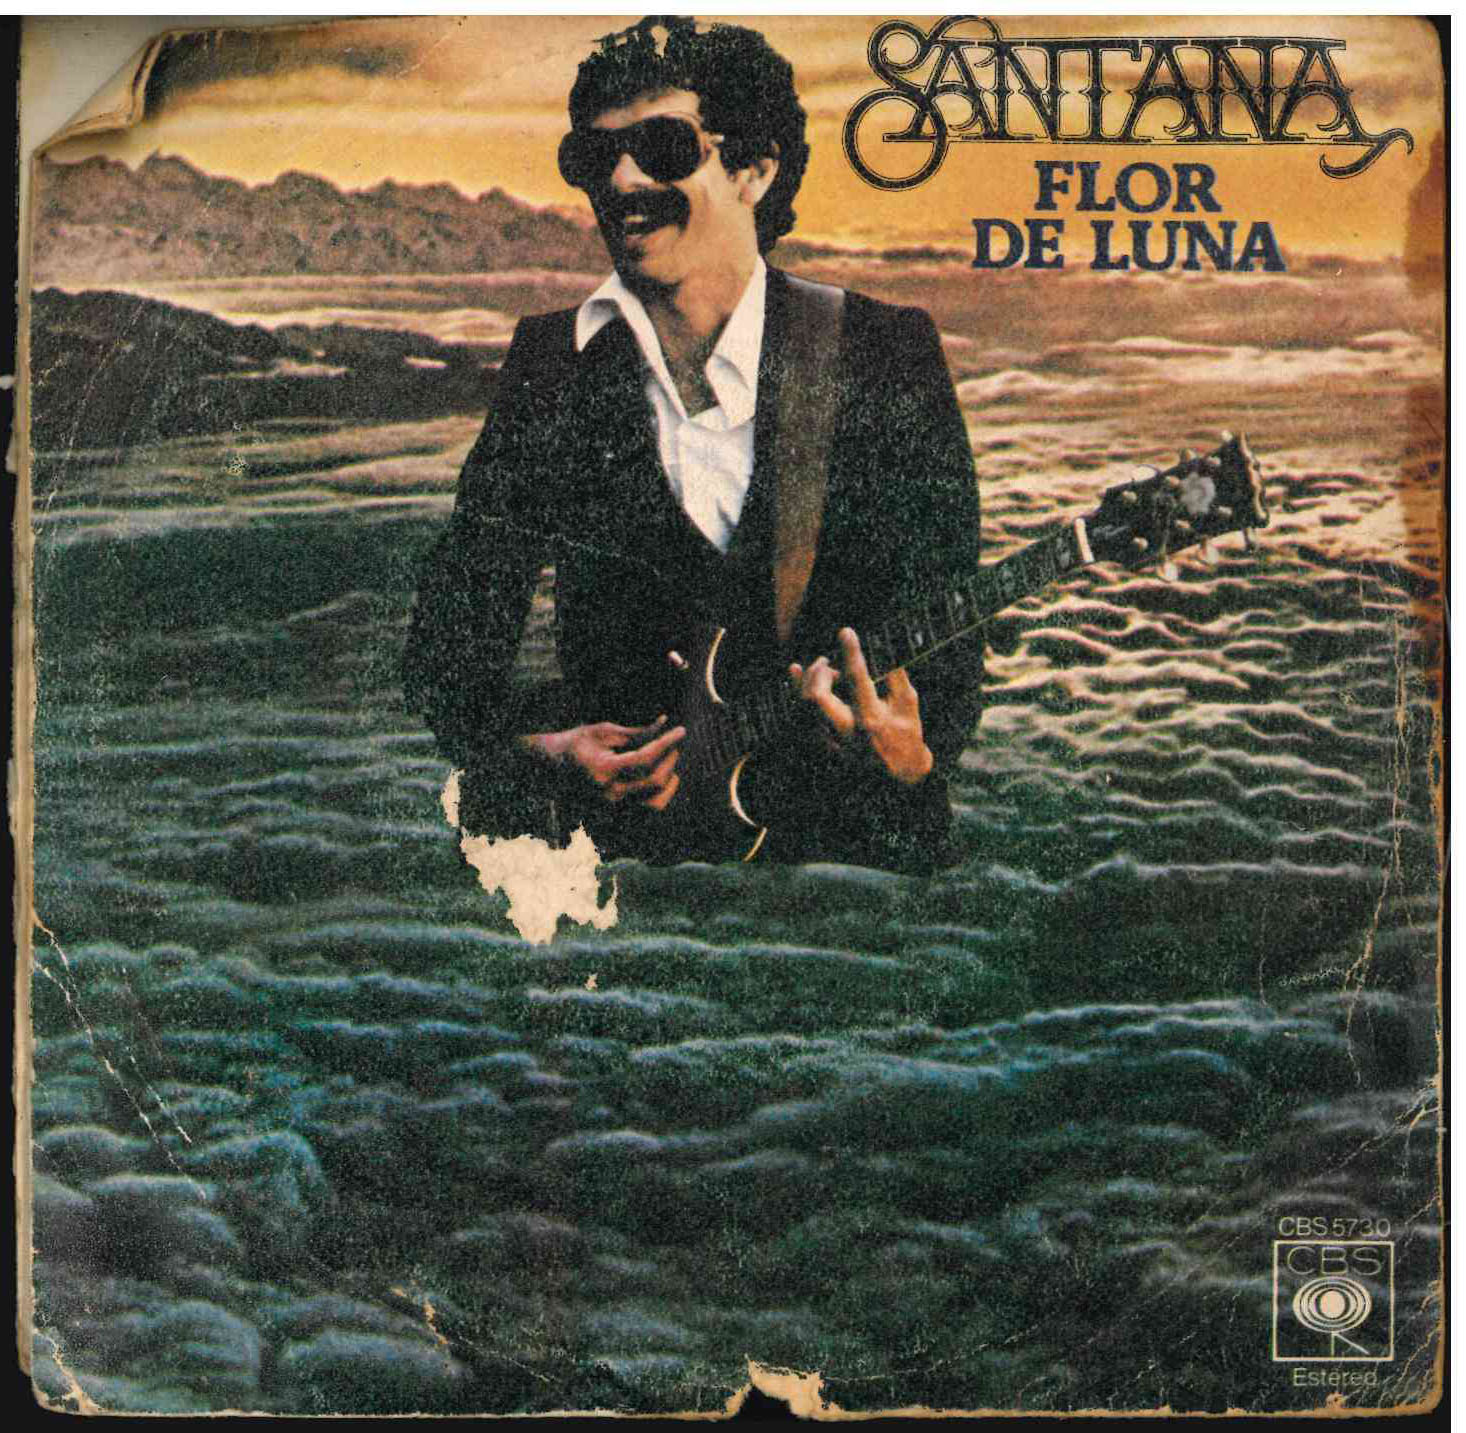 Santana. Flor de luna / Transcendance. CBS 1978 (CBS 5730). Single 45 RPM